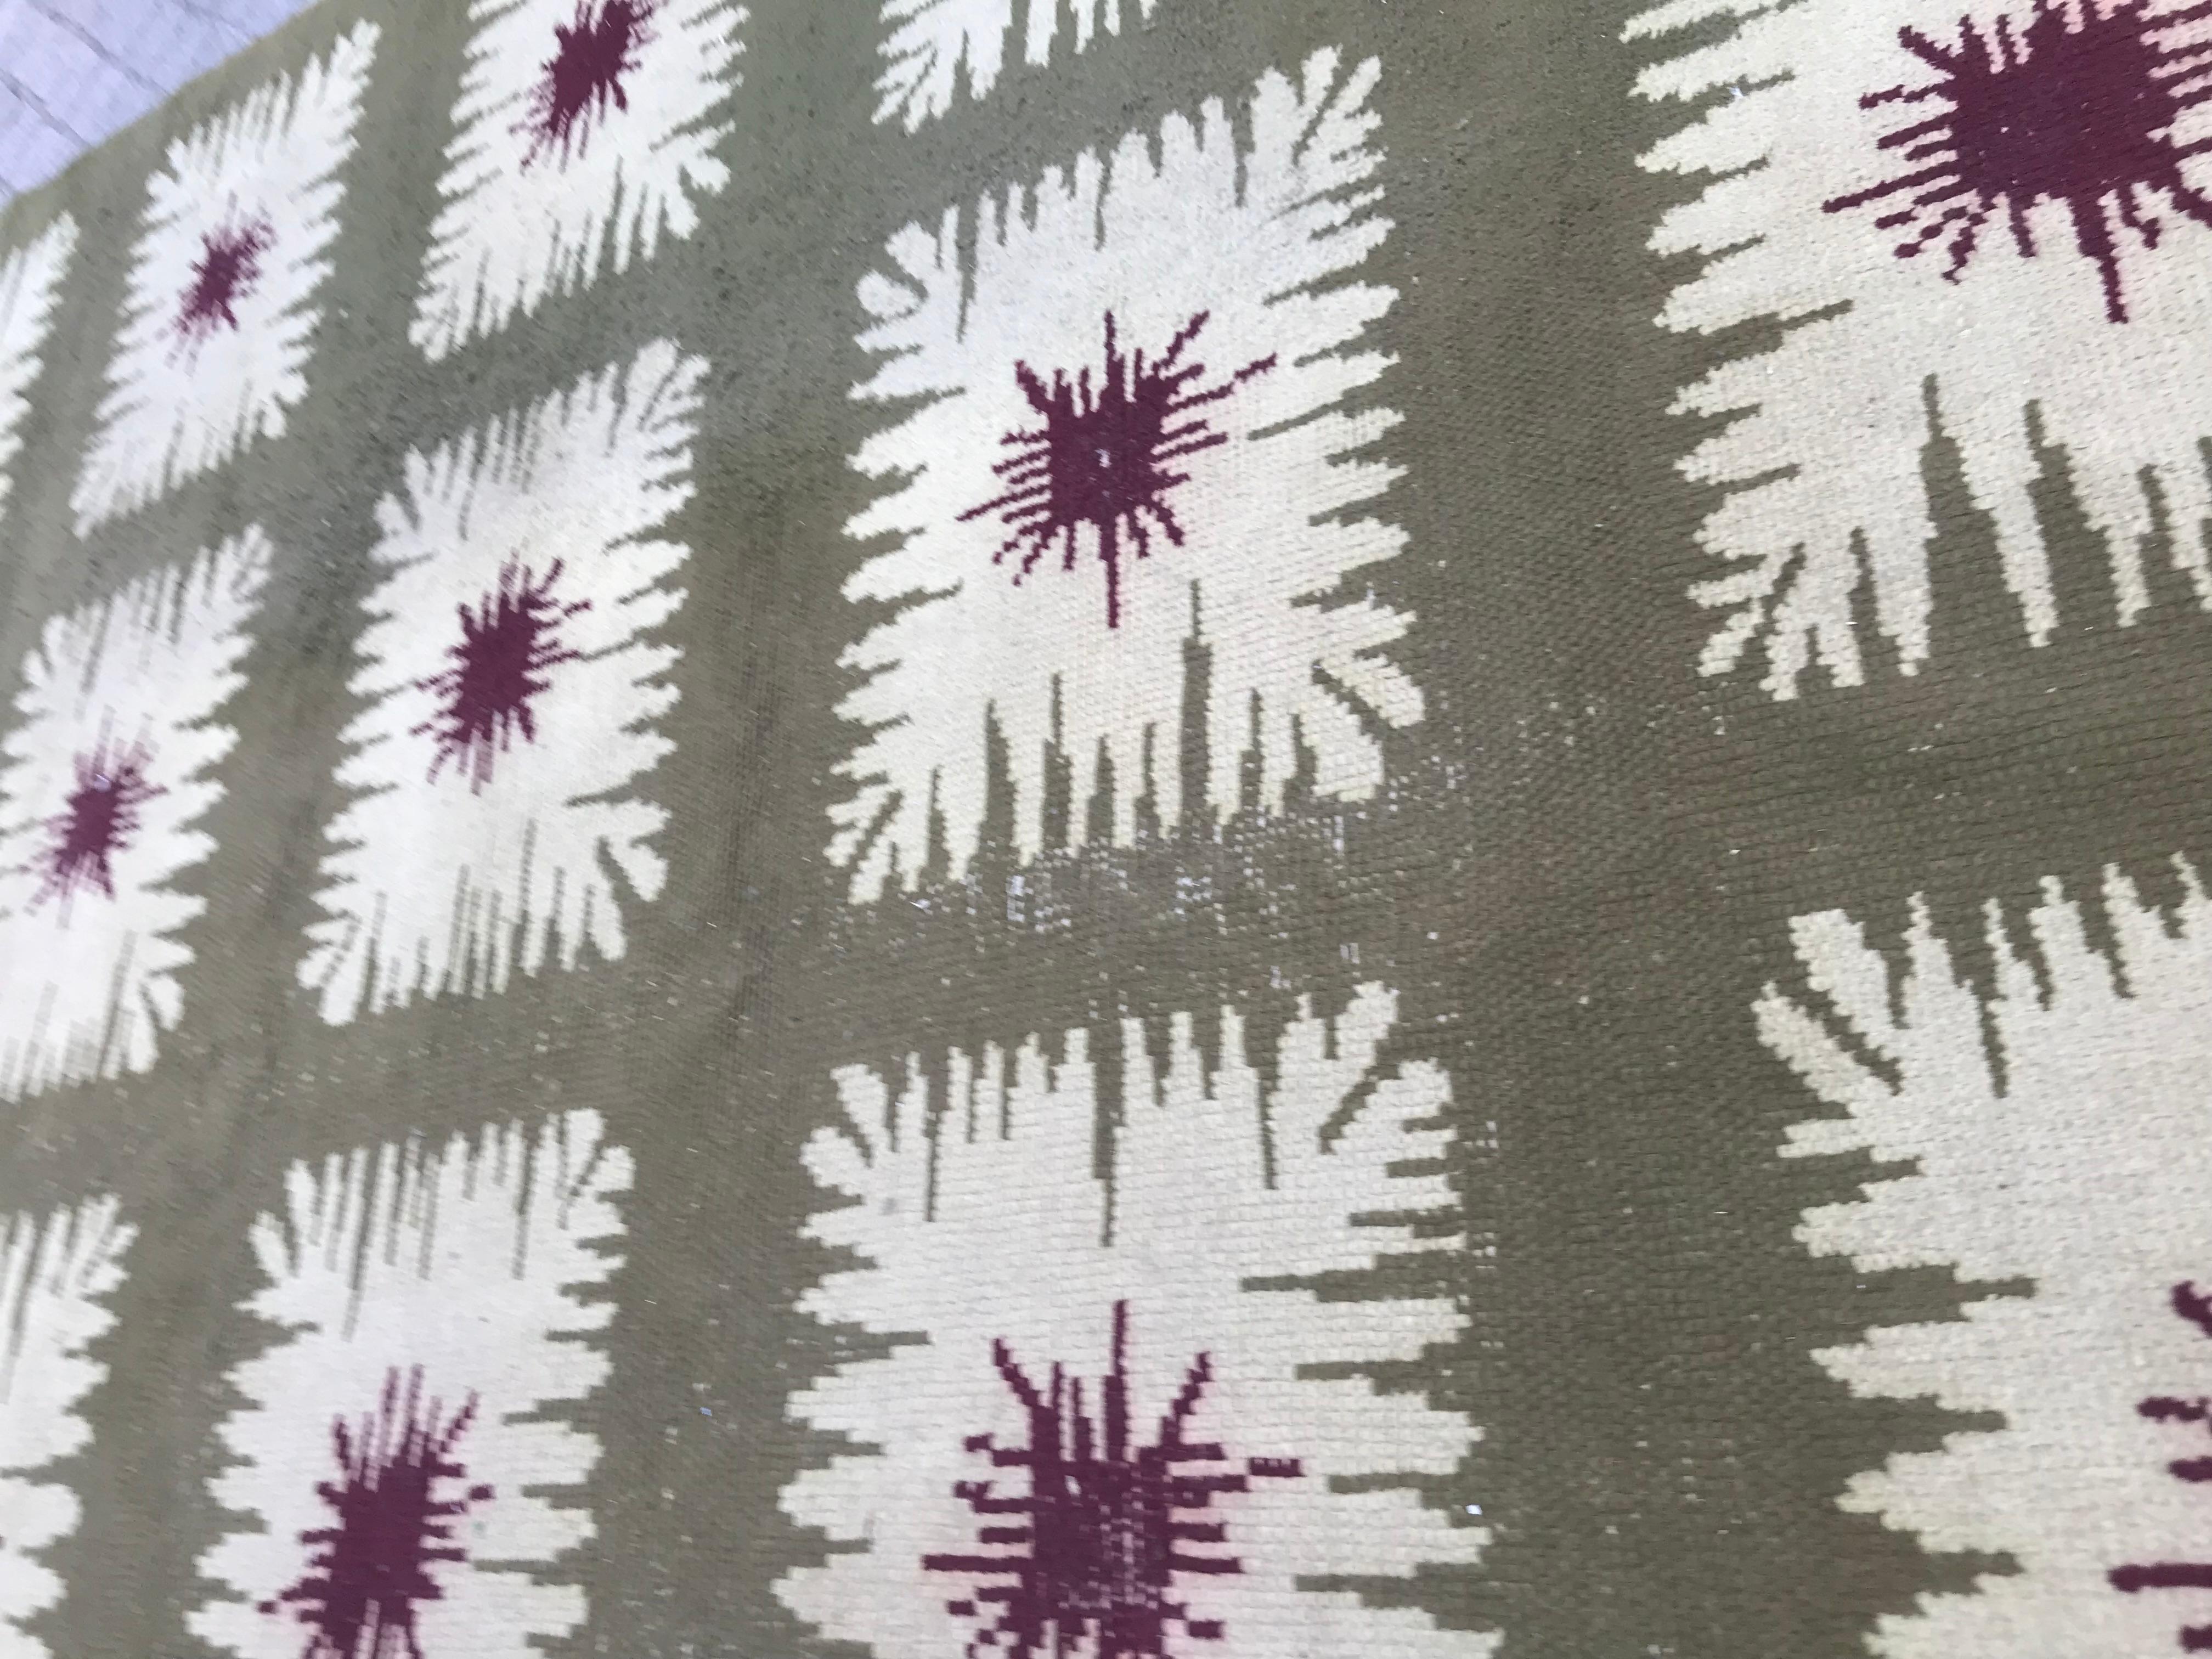 Superbe tapis Art Déco français datant d'environ 1940, méticuleusement noué à la main avec du velours de laine sur une base de coton. Il présente un design moderne captivant dans de magnifiques teintes vertes, violettes et beiges. Motifs carrés